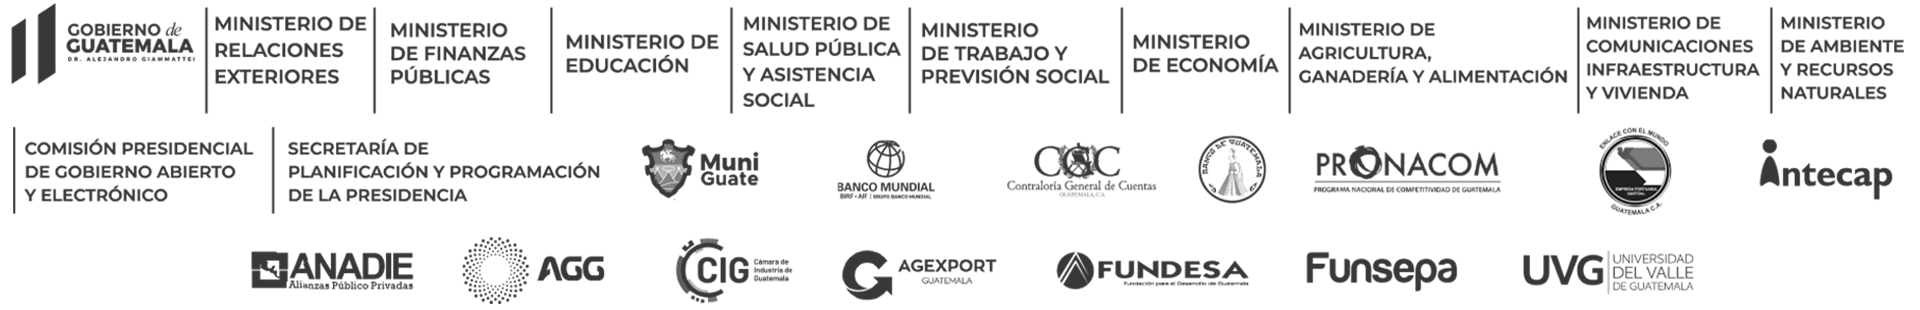 GNSD logos interinstitucionales